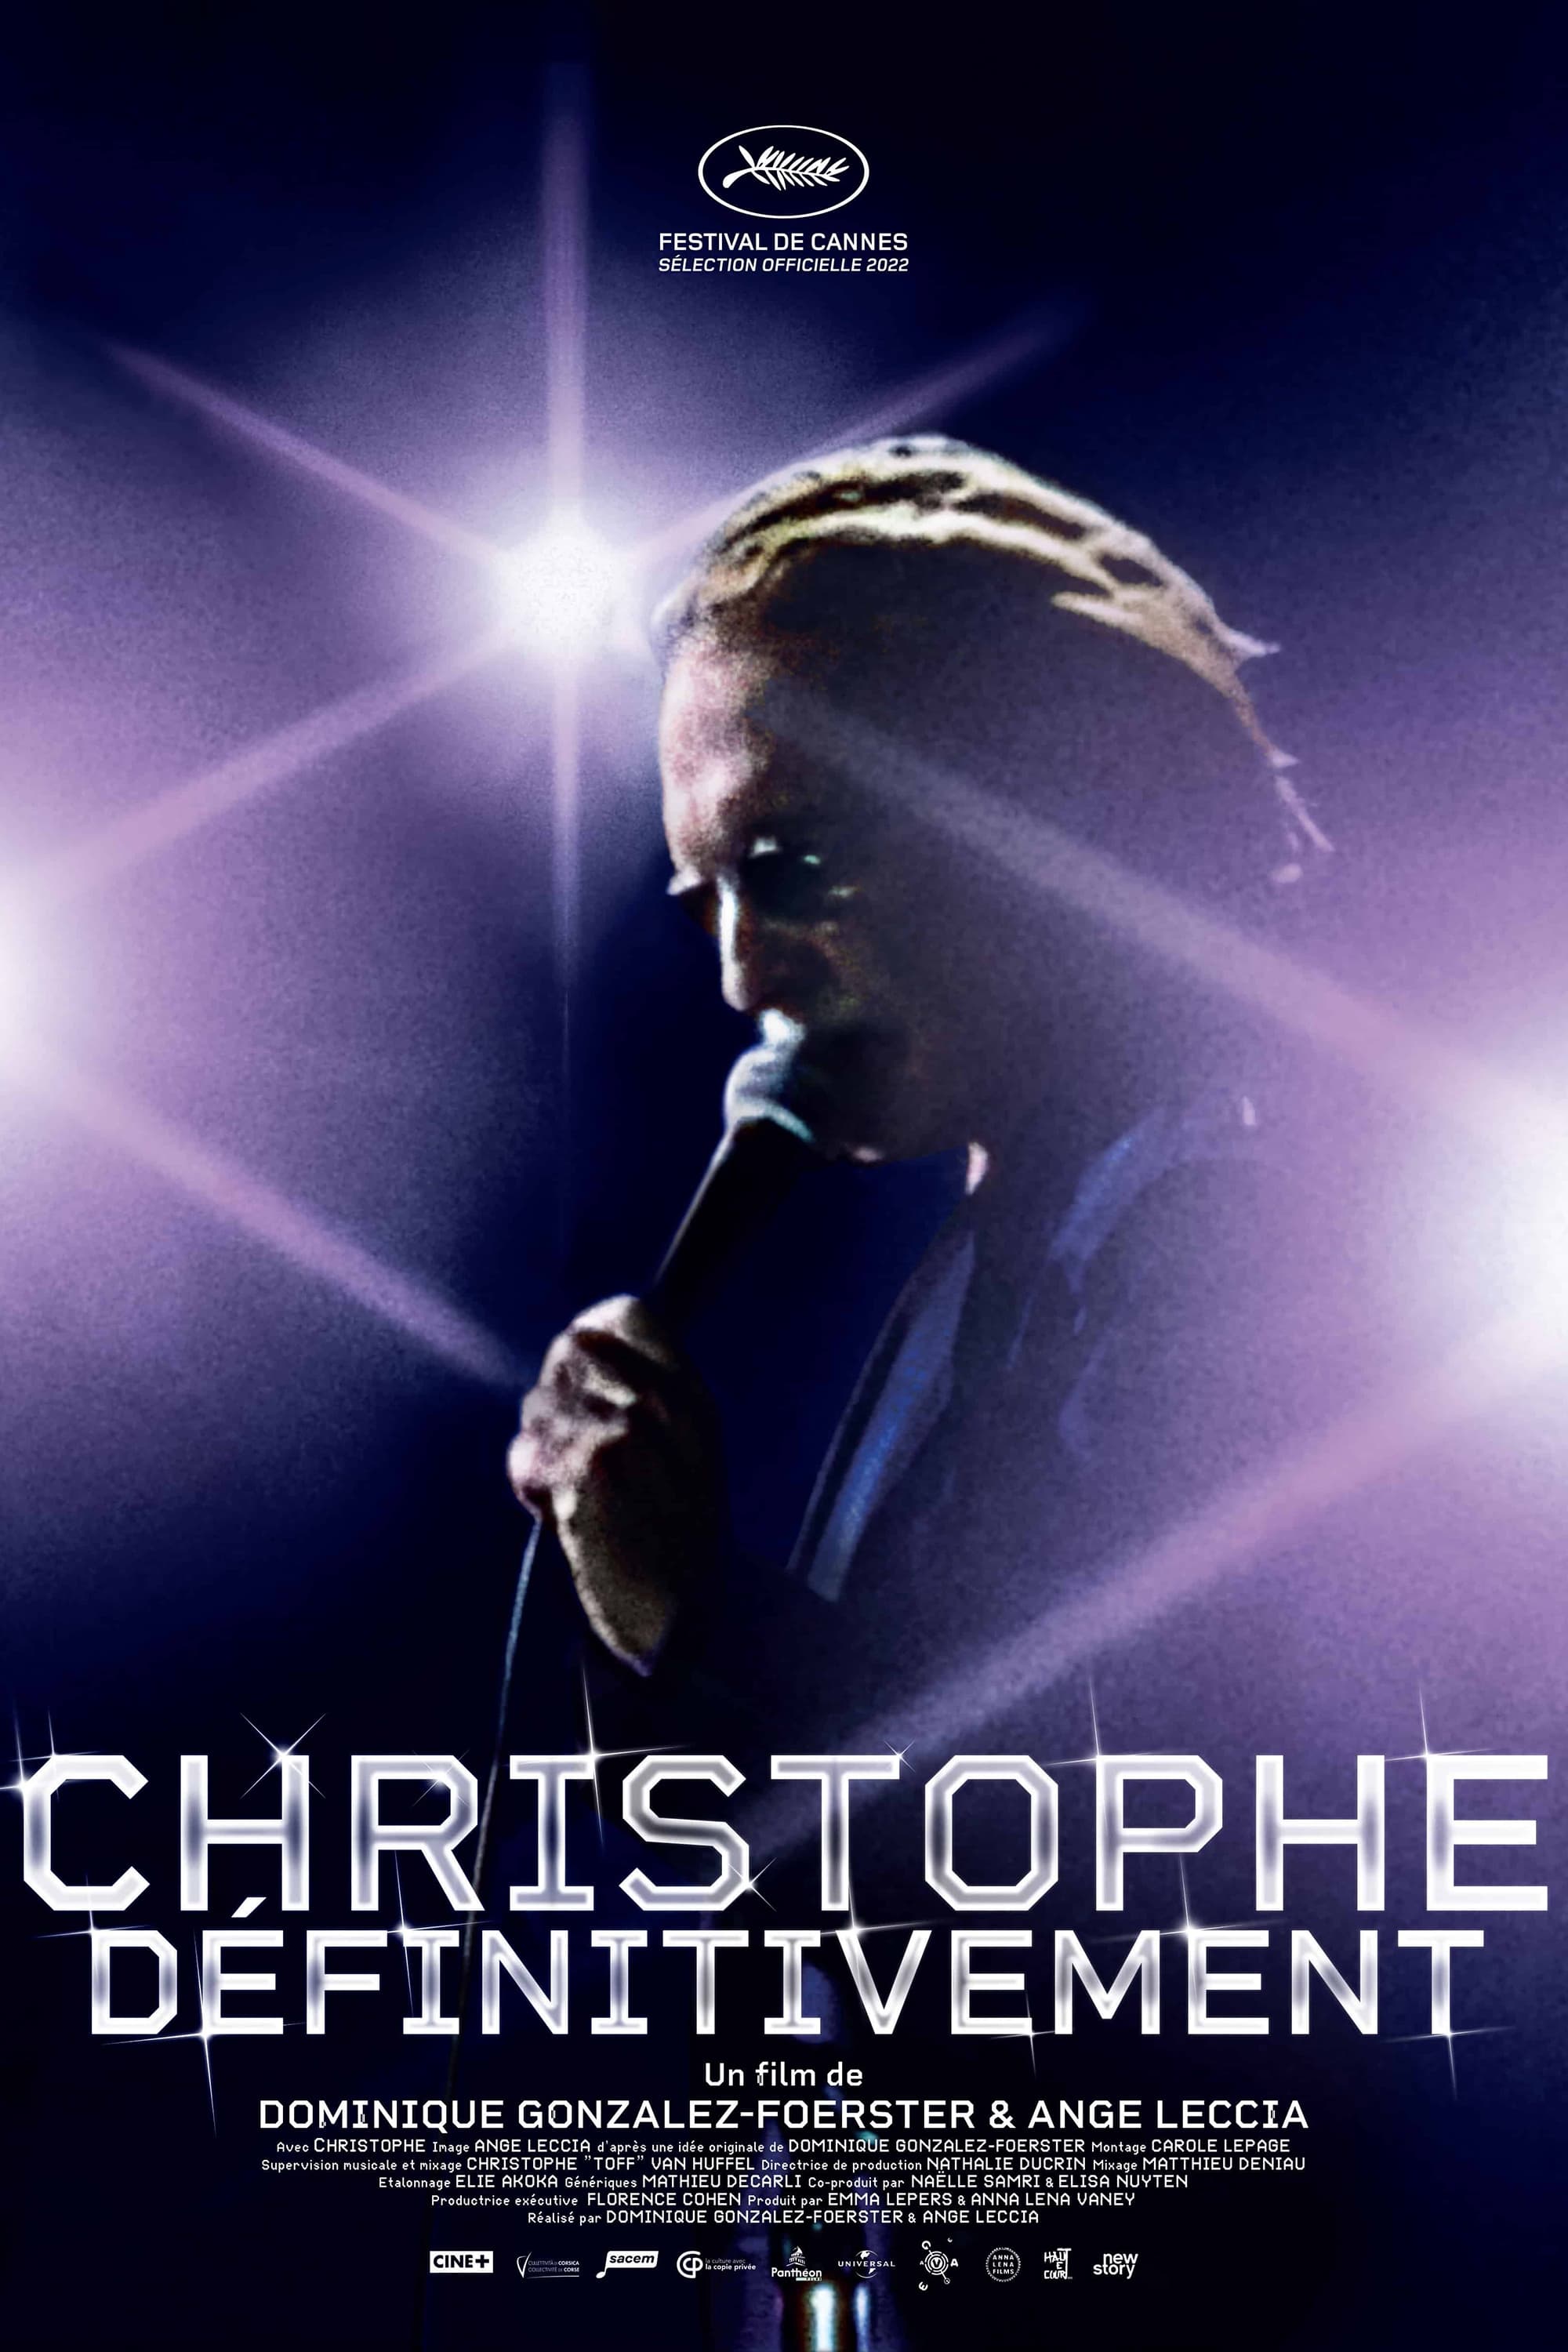 Christophe… Definitely